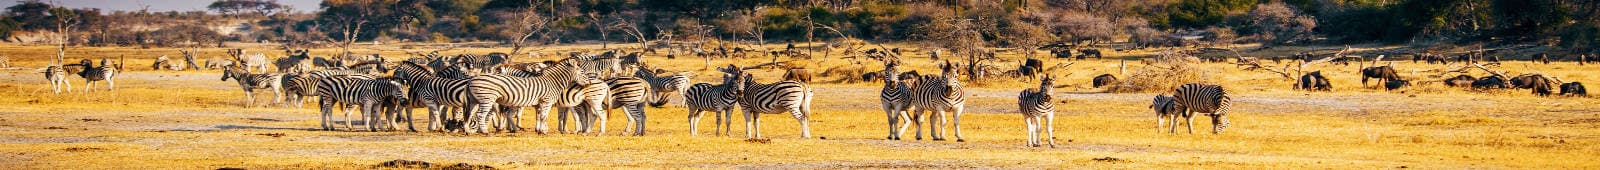 Botwana Wild Life Zebra